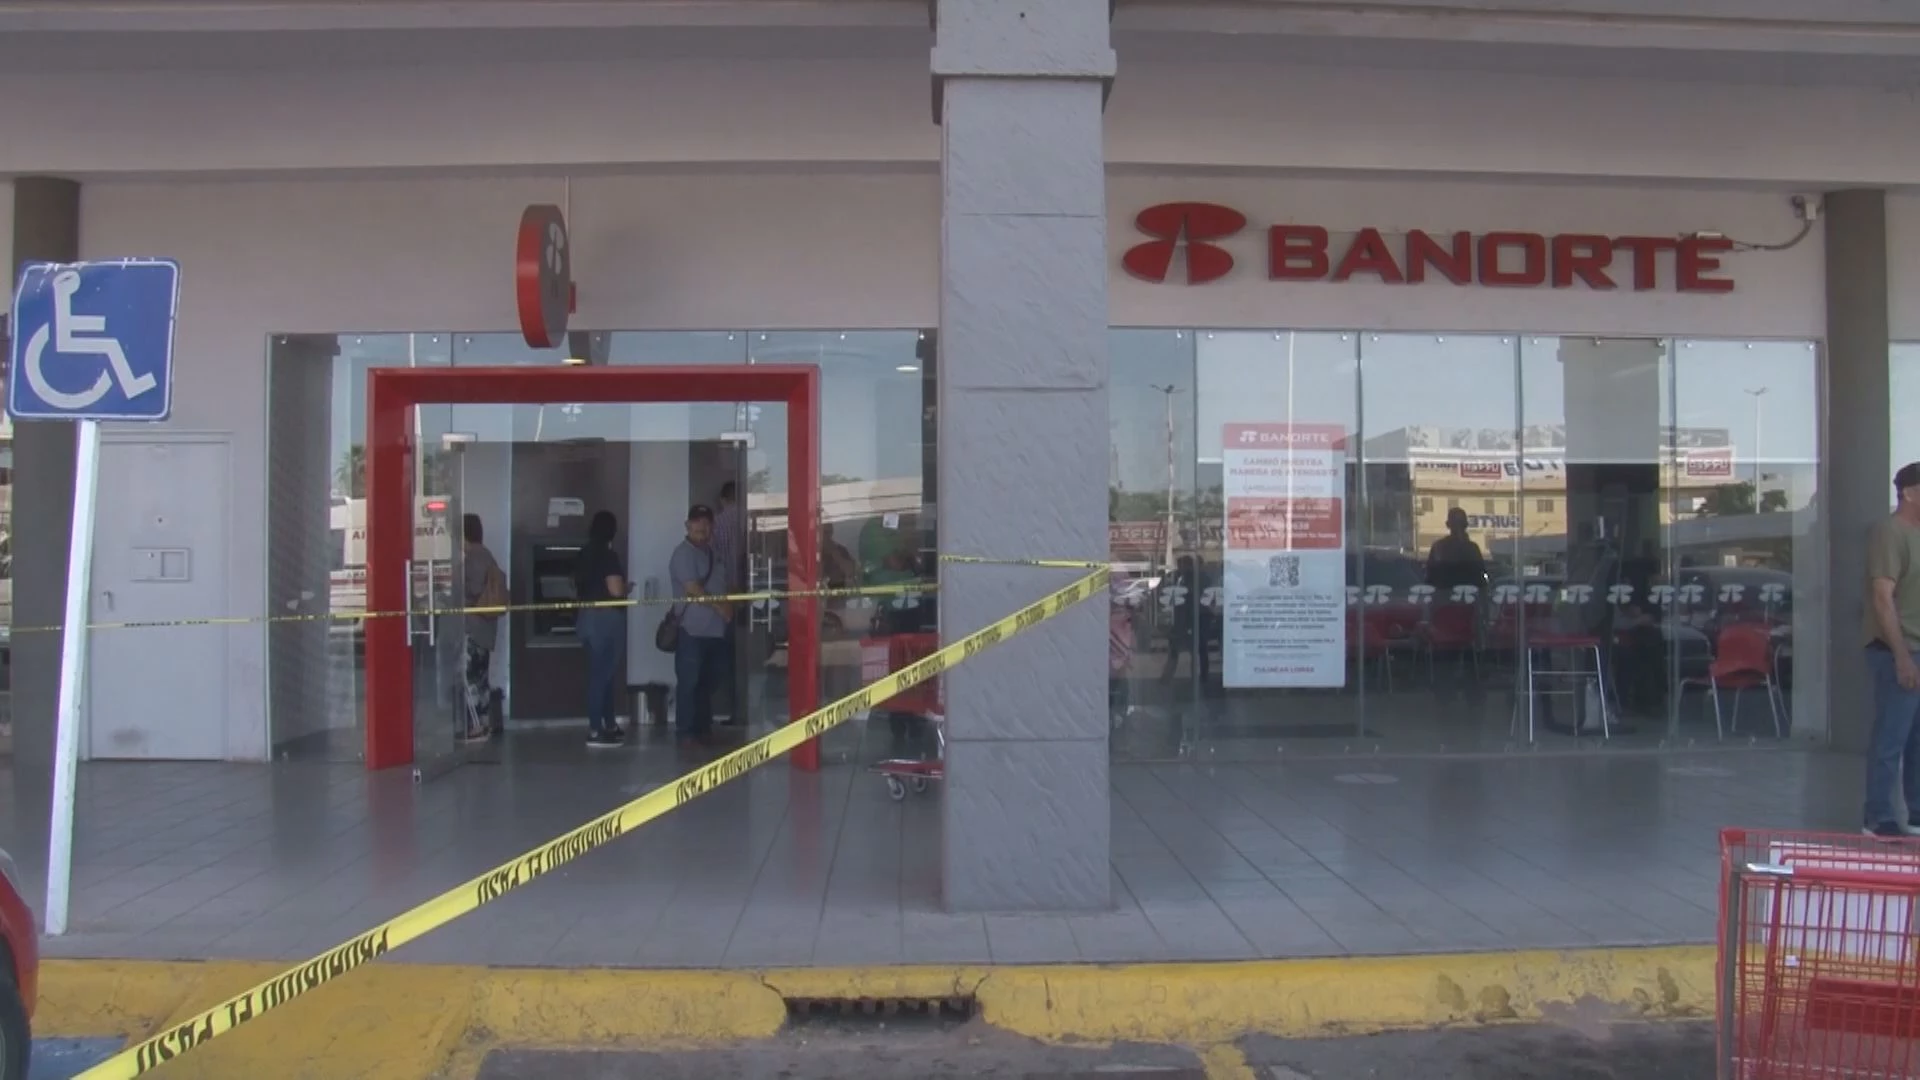 ¡Custodiarán bancos en Sinaloa!